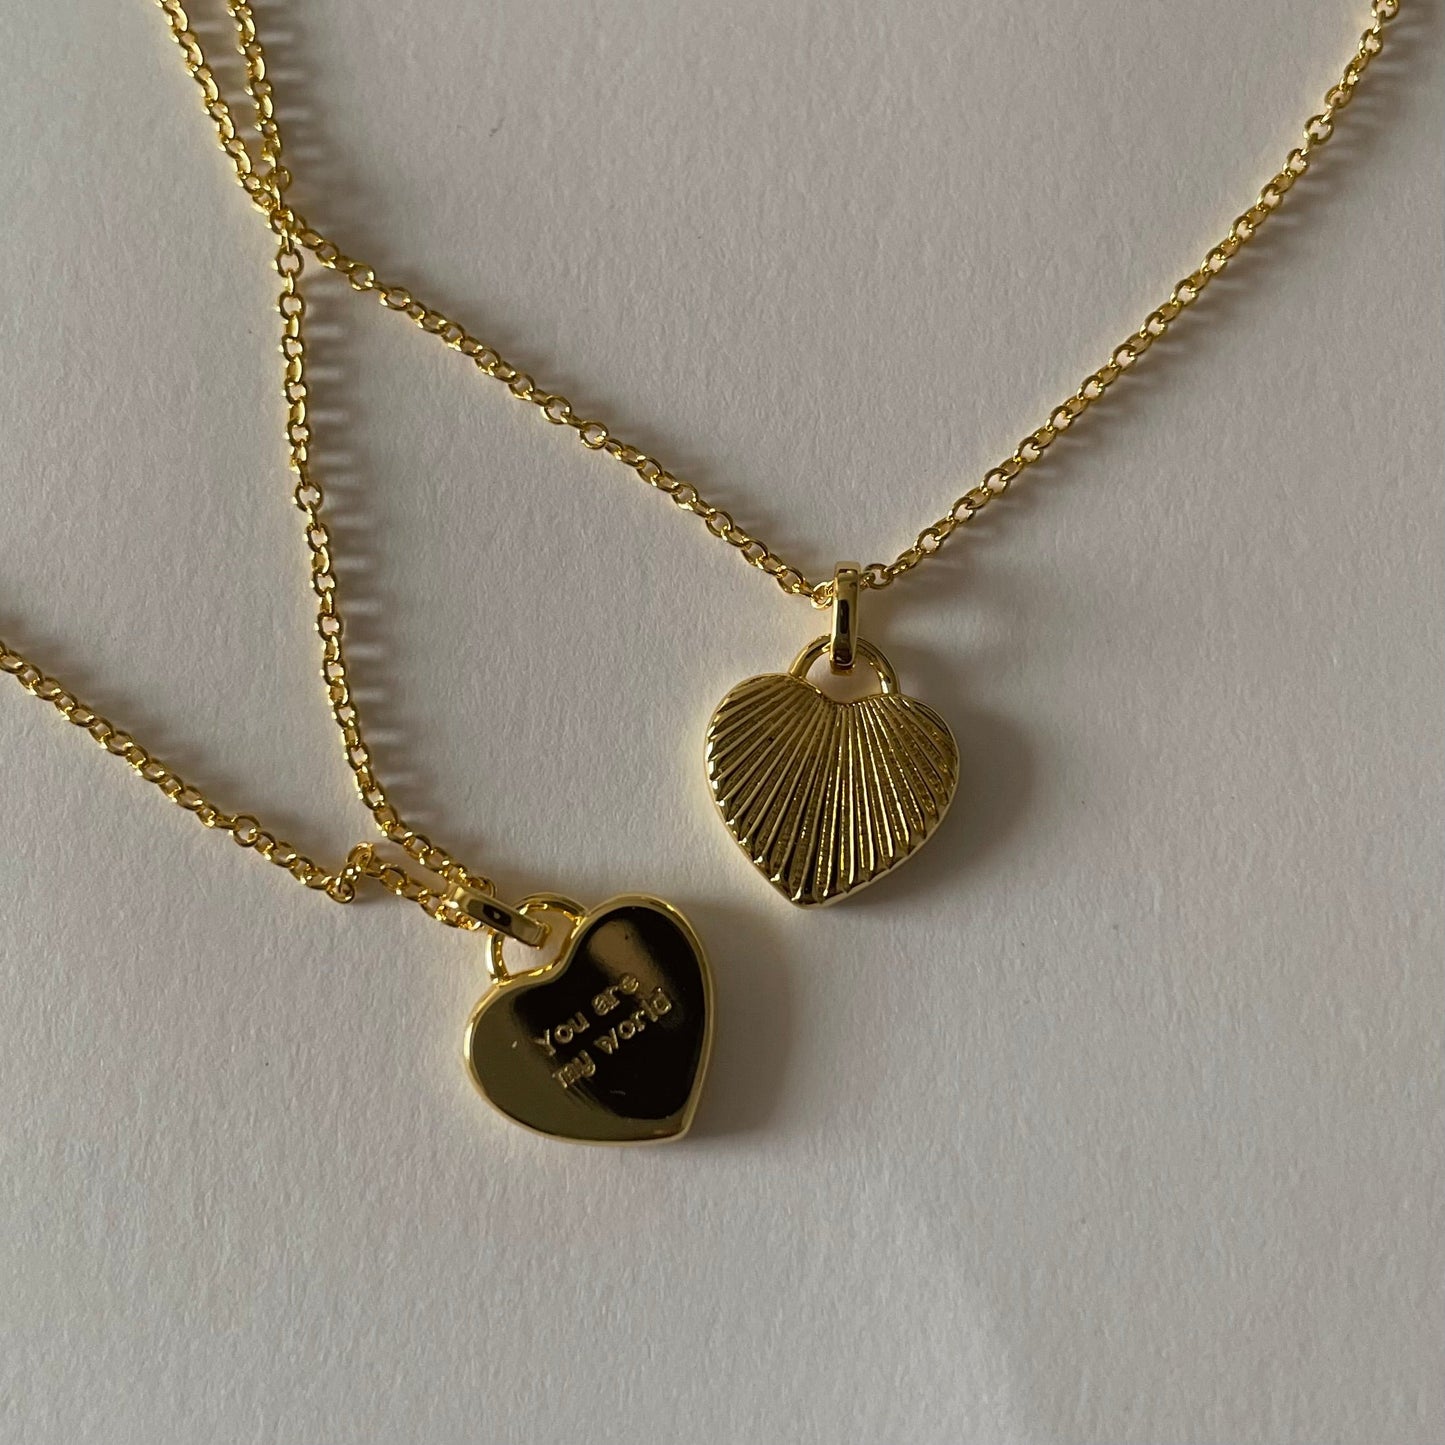 Sunshine Heart Necklace - Namaste Jewelry Canada